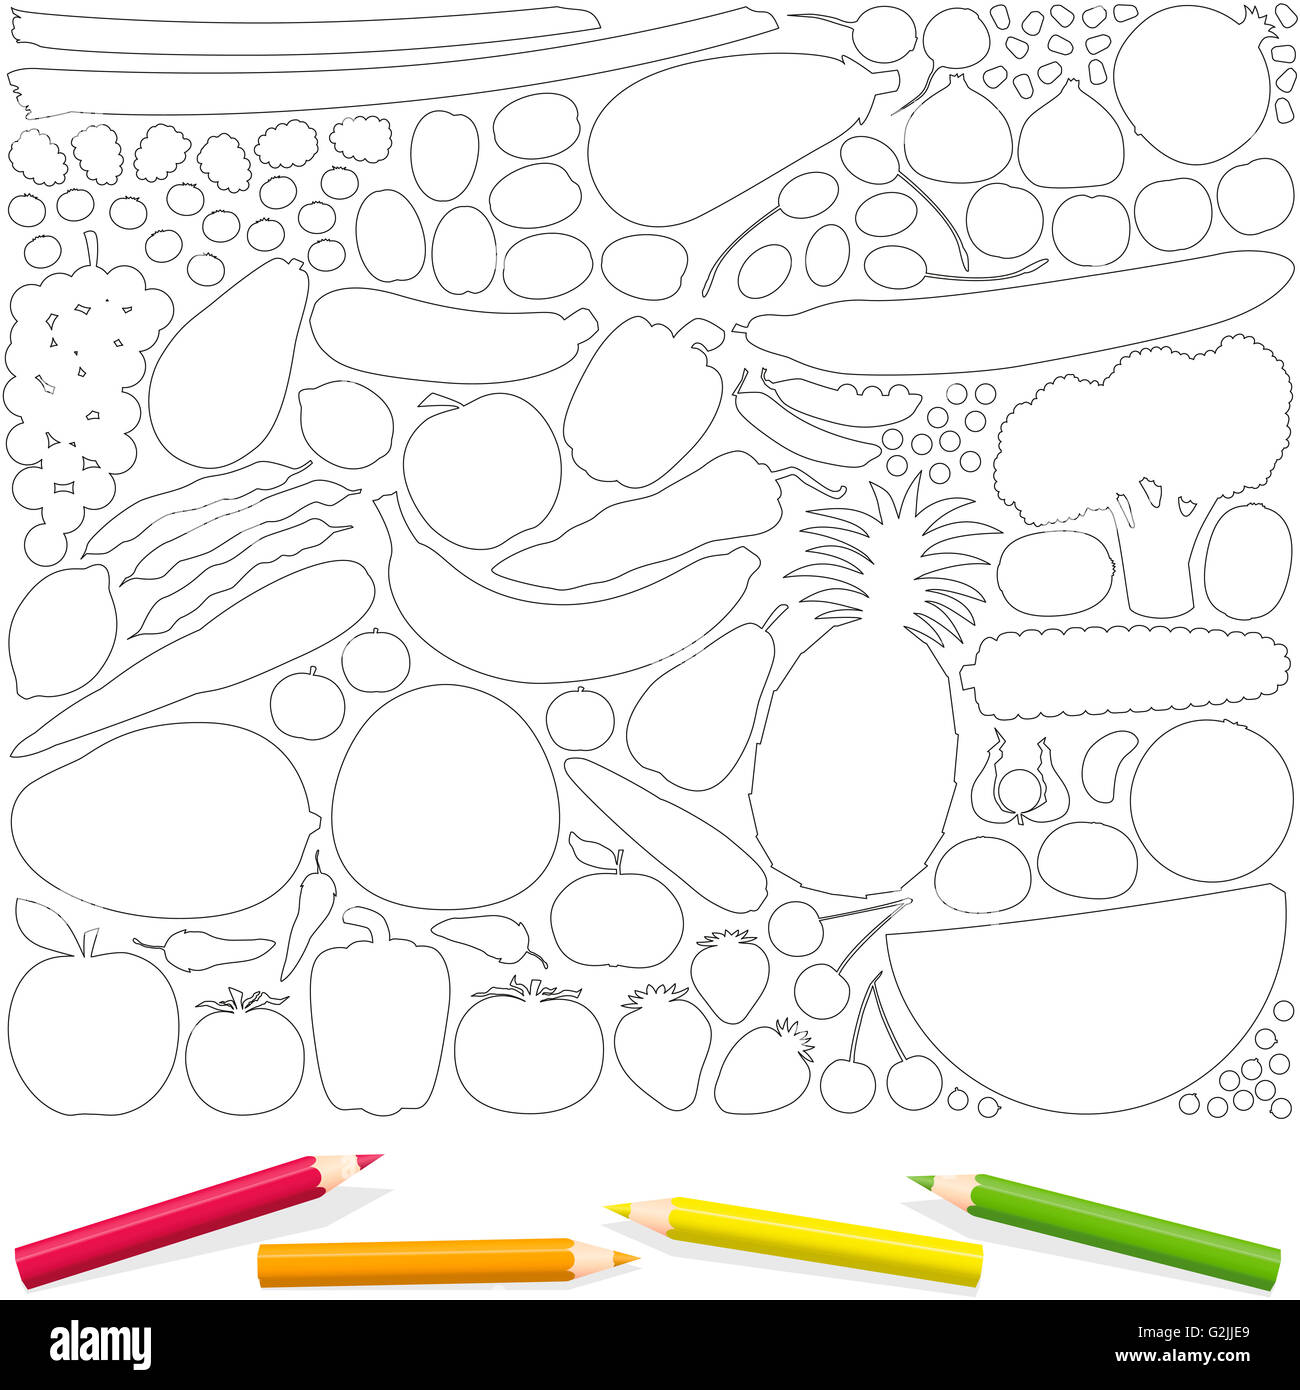 La frutta e le verdure di contorno nella pagina di colorazione, con quattro matite di colore. Isolato illustrazione vettoriale su sfondo bianco. Foto Stock